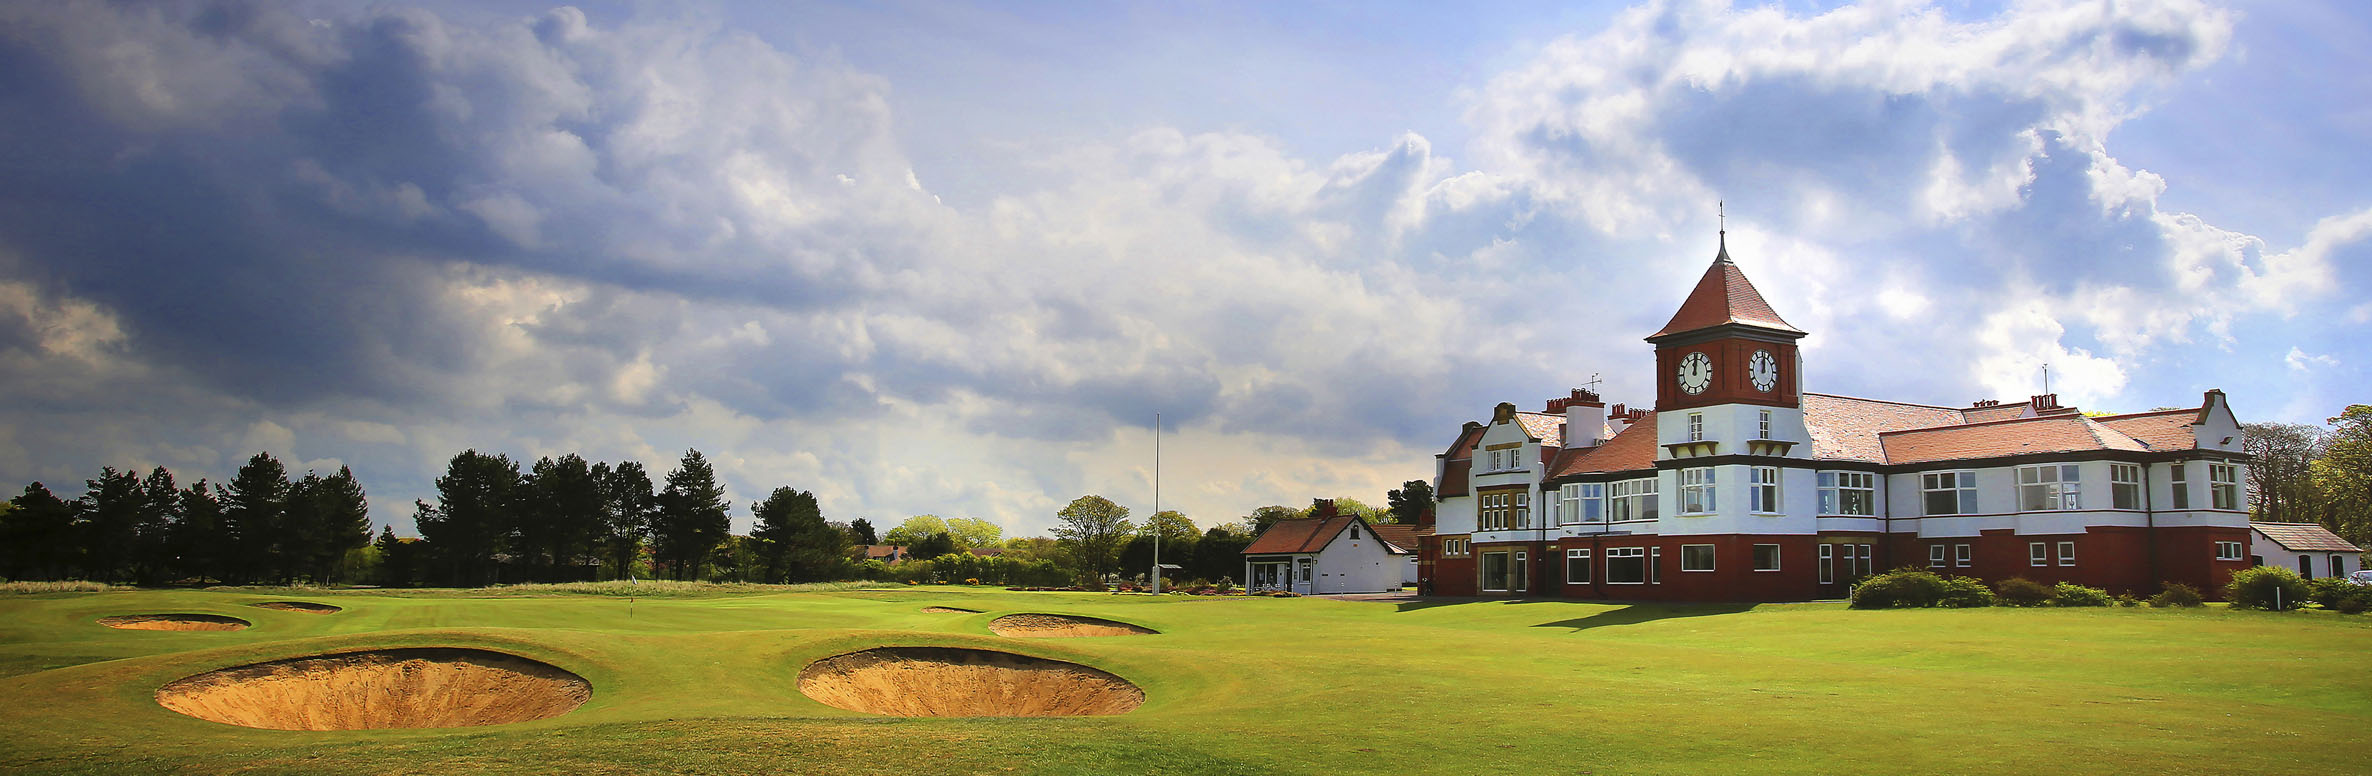 Golf Course Image - Formby Golf Club No. 18